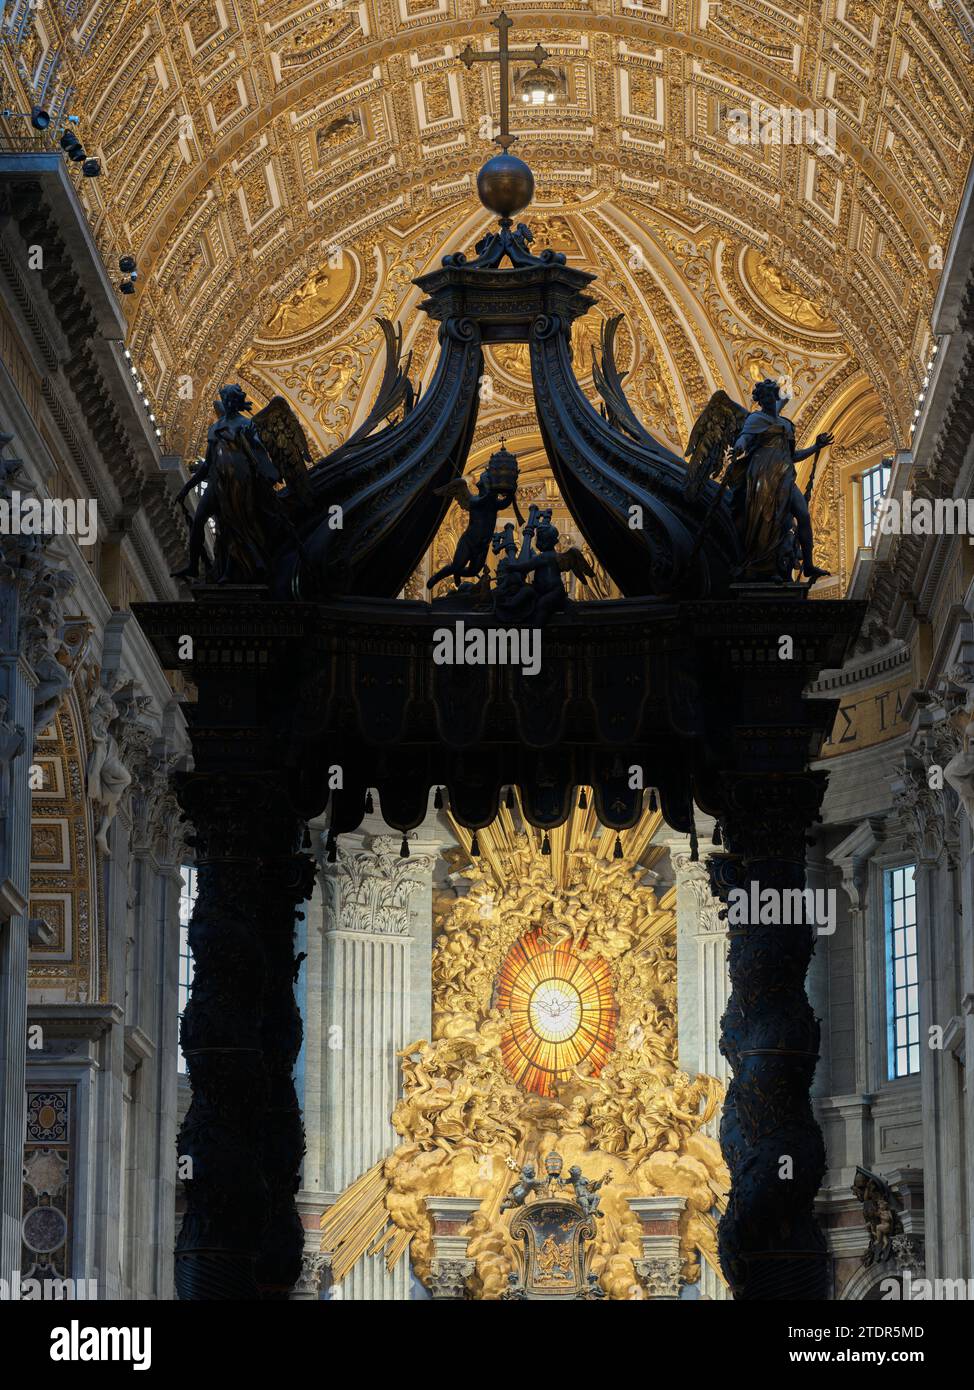 Colombe, symbole de l'Esprit Saint, sur la cathedra Petri (chaise de Saint Pierre) dans l'abside de la basilique Saint Pierre, Rome, Vatican, Italie. Banque D'Images